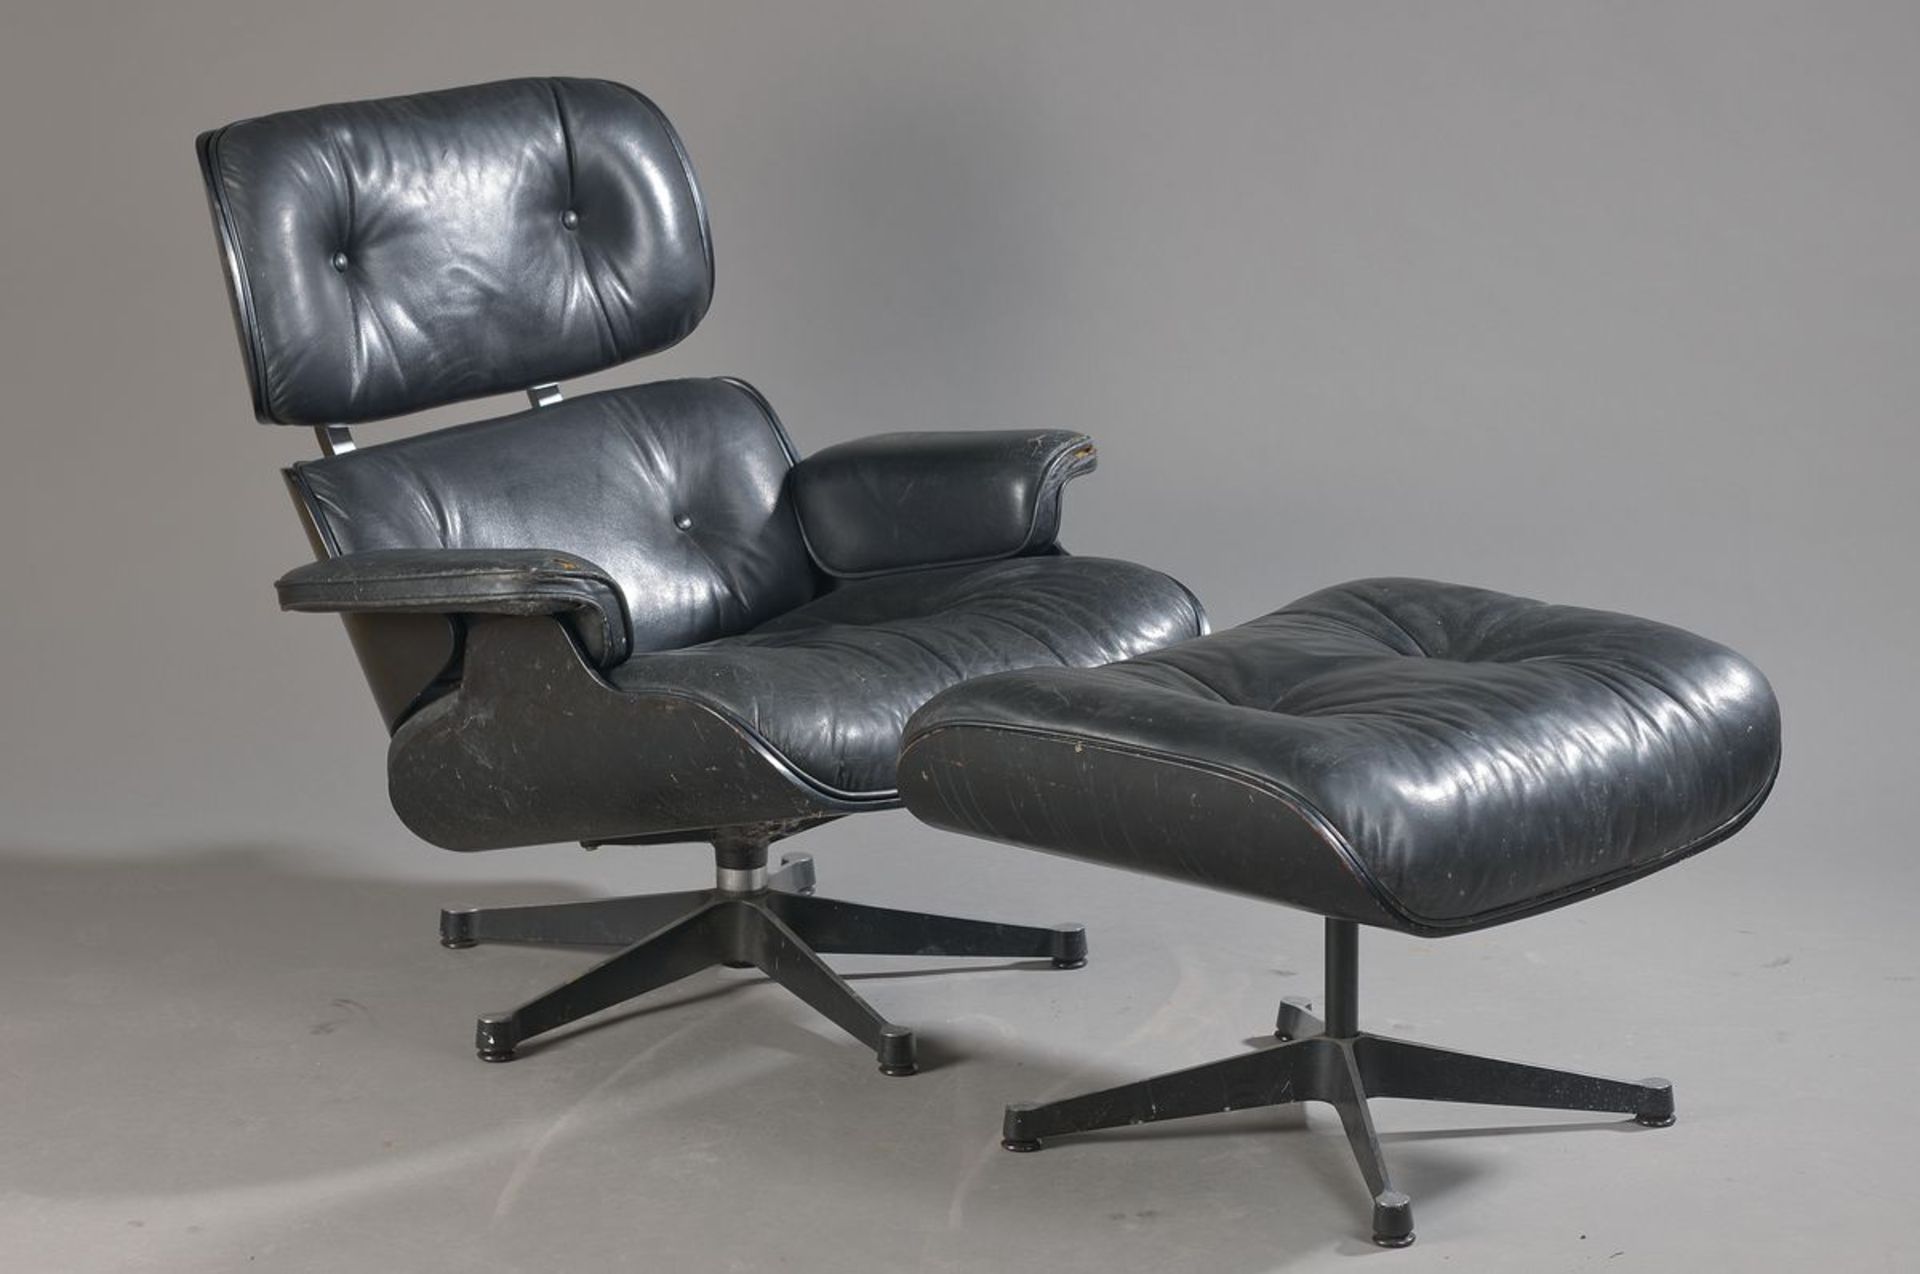 Lounge chair und Ottoman, Charles und Ray Eames, Vitra, Aluminium, Schichtholz-Sitzschale, schwarz